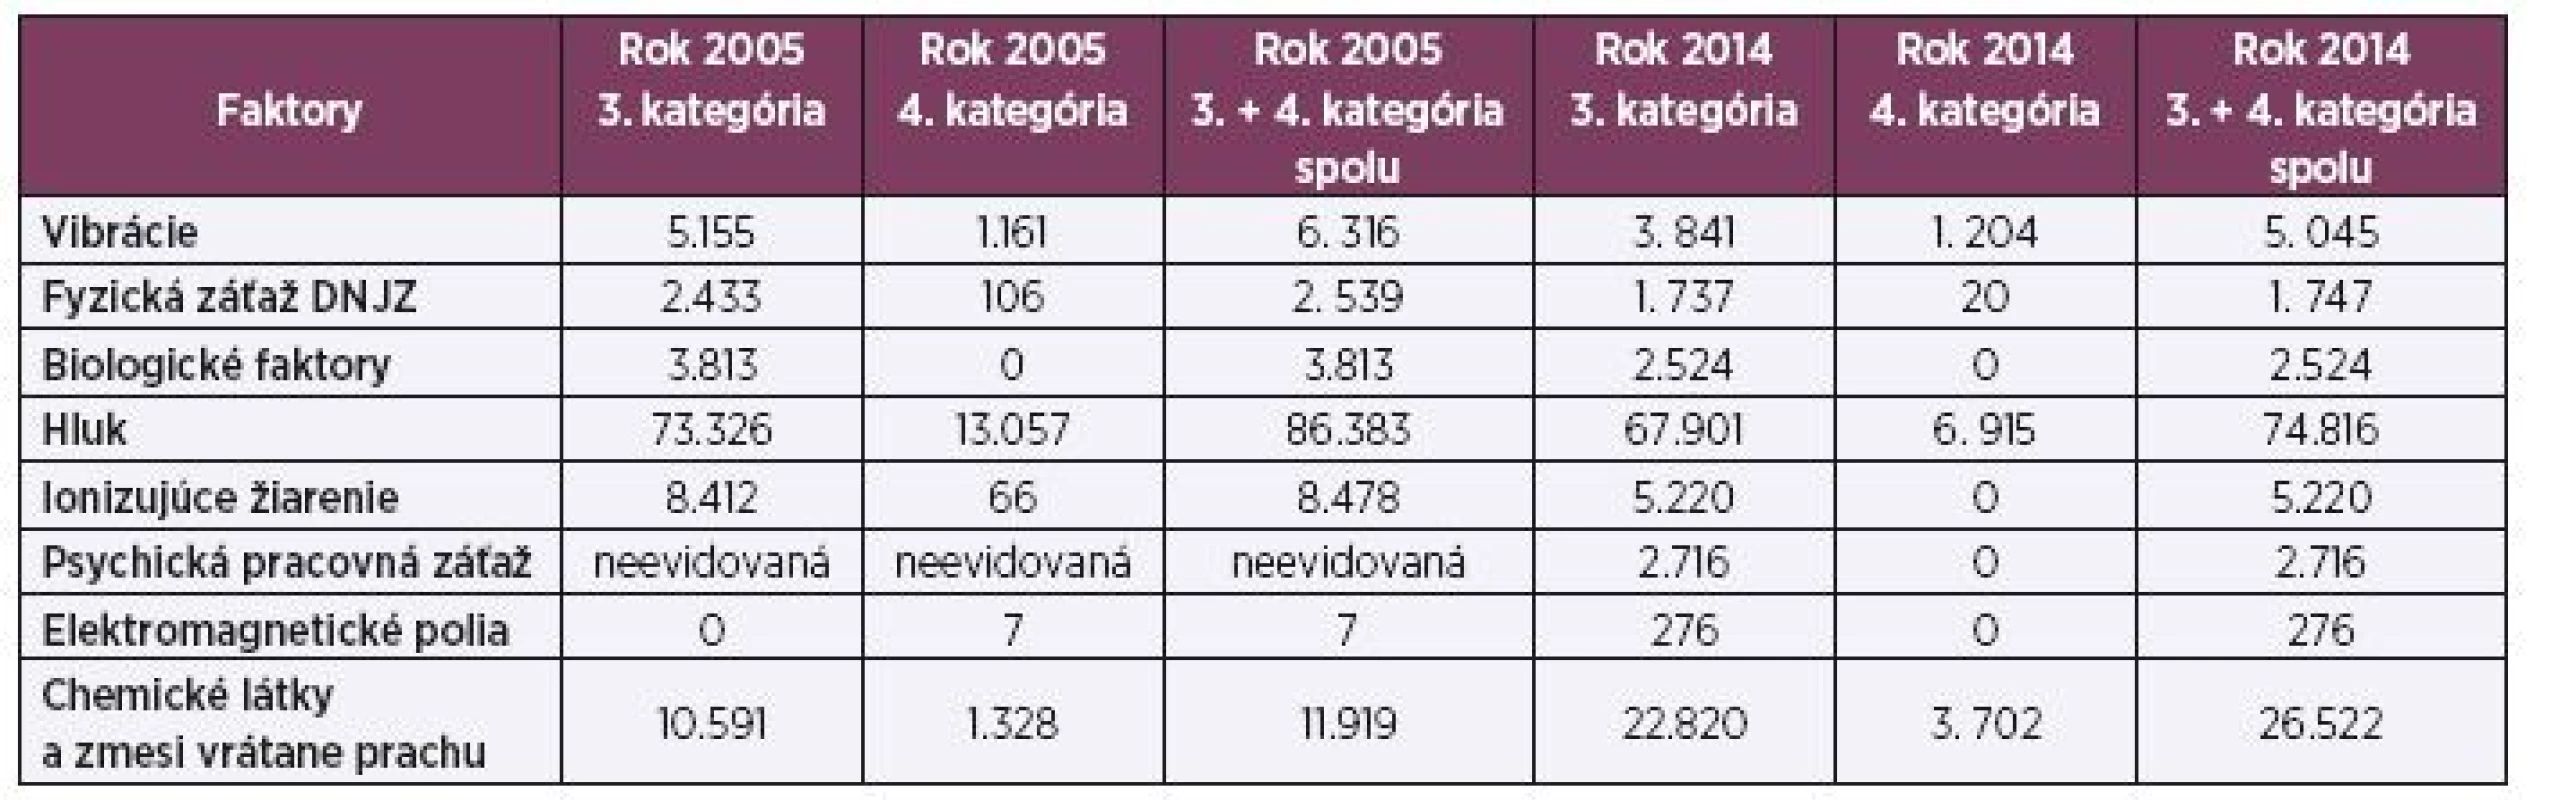 Počet zamestnancov vykonávajúcich rizikové práce v SR v roku 2005 a 2014 podľa rizikových faktorov v 3. a 4. kategórii